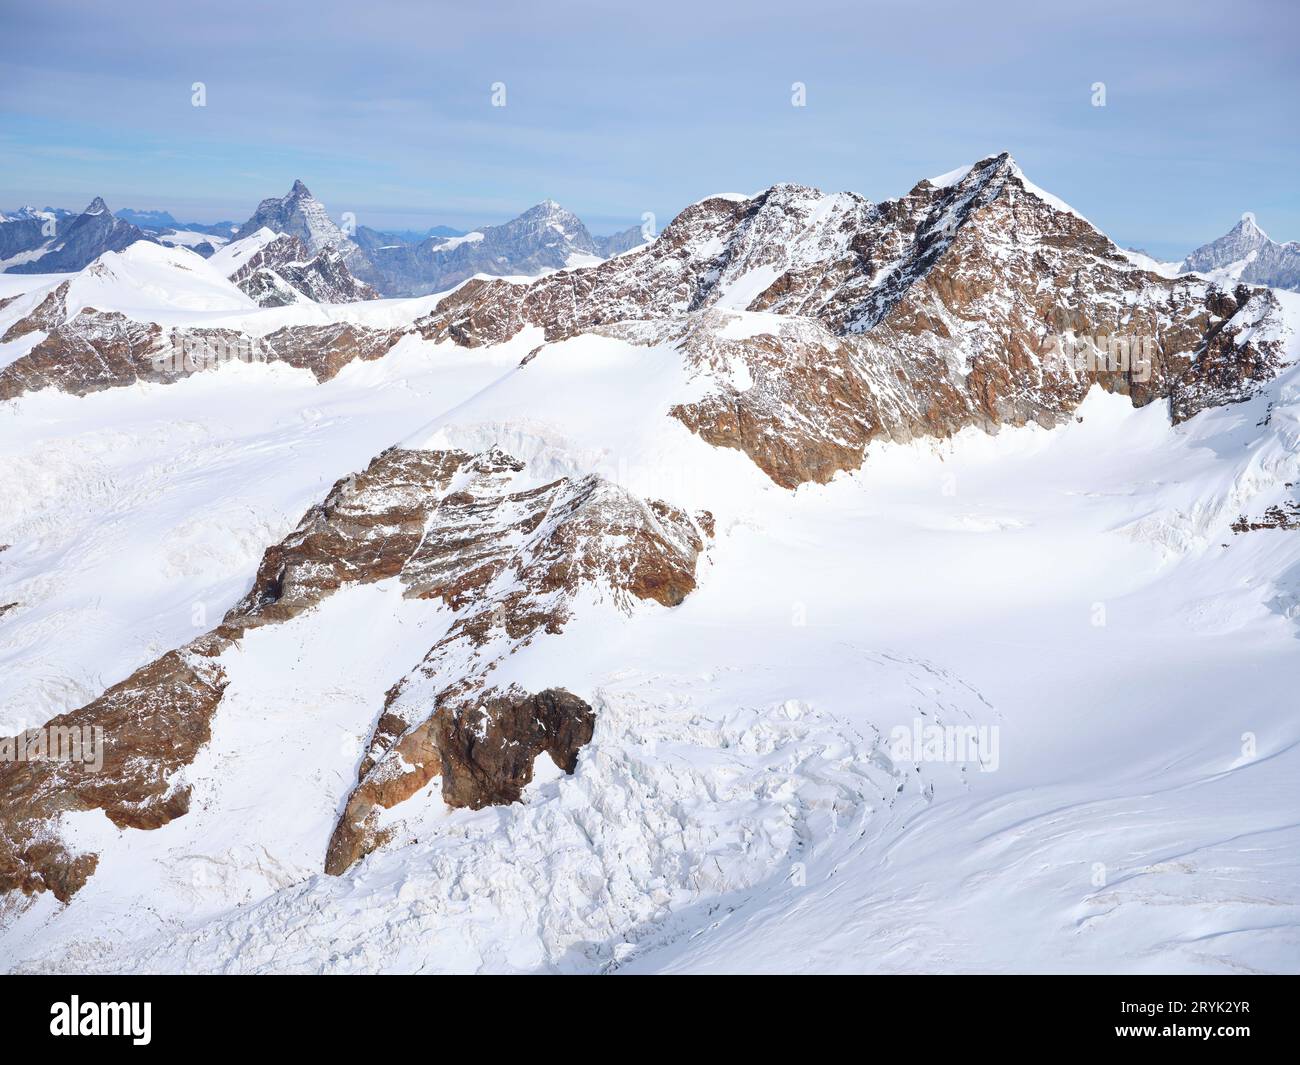 VUE AÉRIENNE. Côté italien du Lyskamm (altitude : 4533m asl) sur le massif du Monte Rosa. Vallée d'Aoste, Italie. Banque D'Images